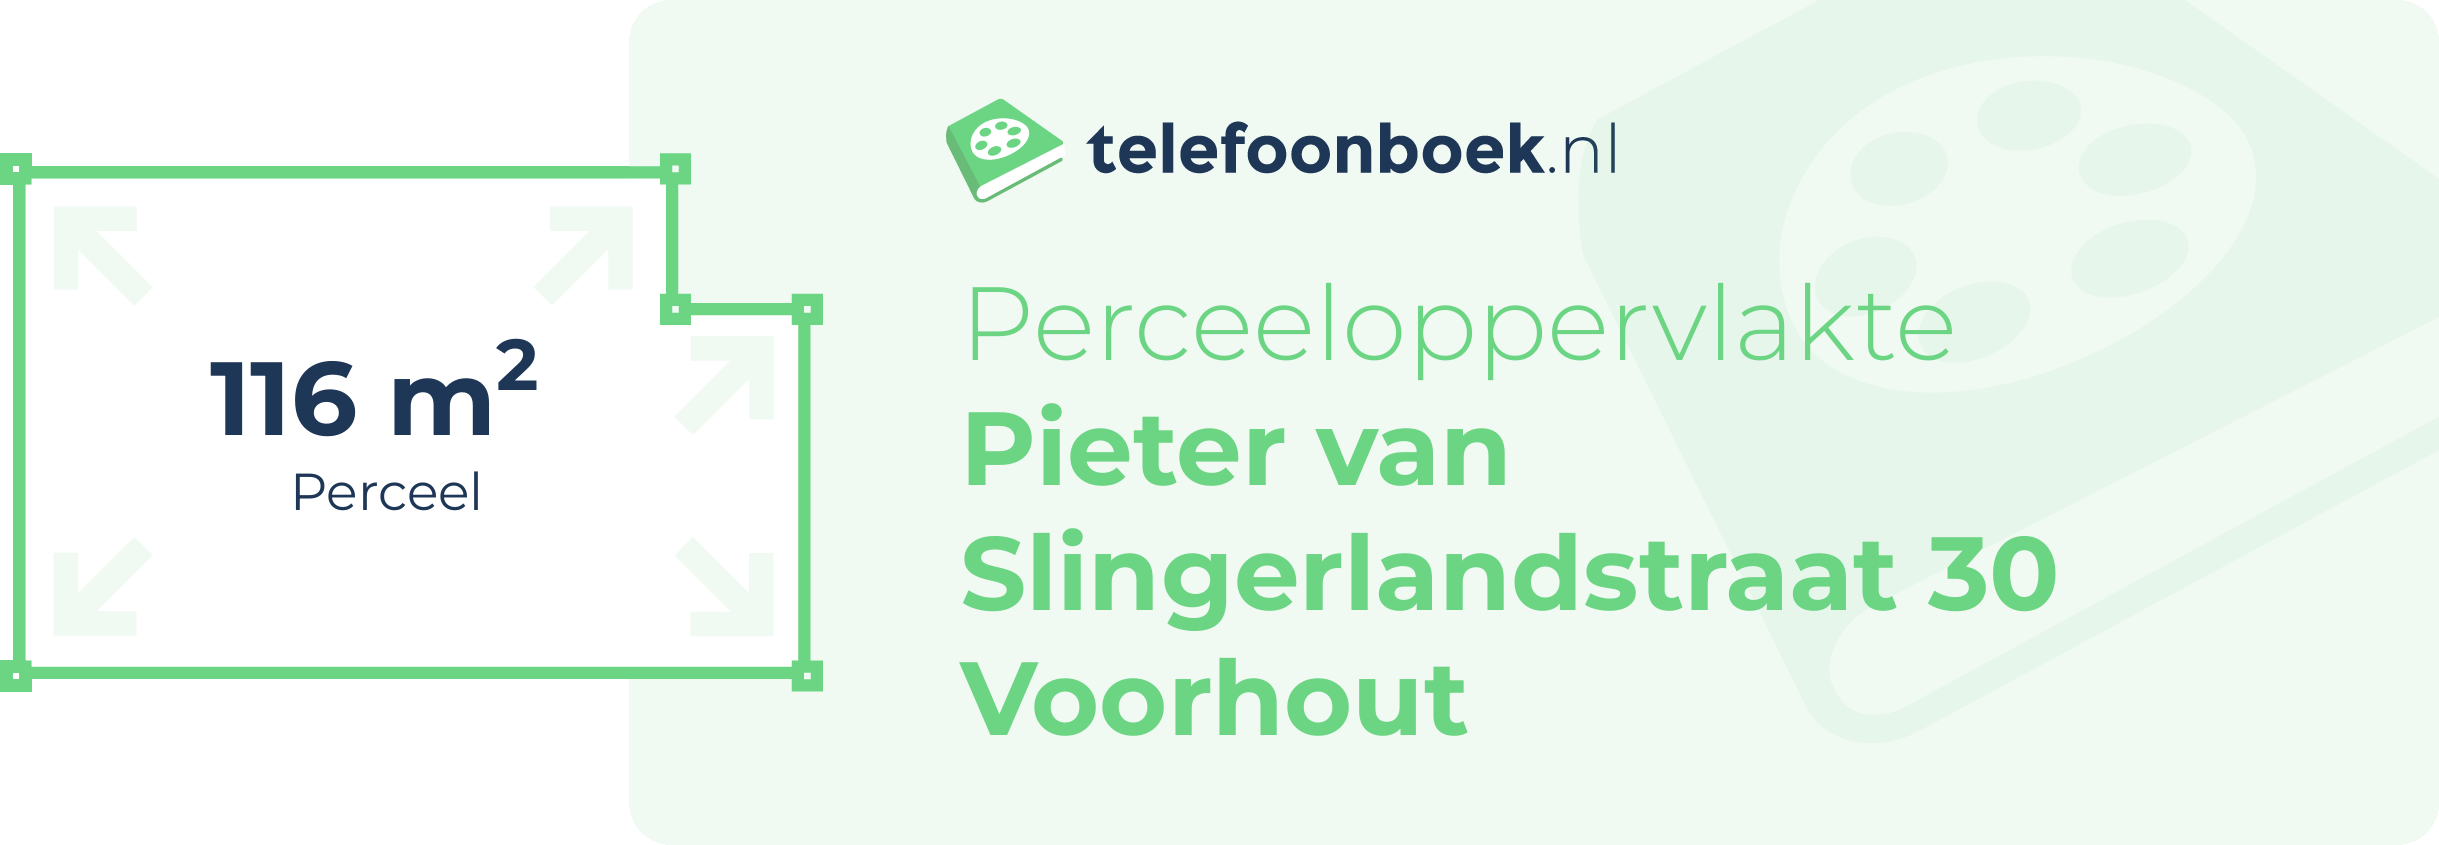 Perceeloppervlakte Pieter Van Slingerlandstraat 30 Voorhout